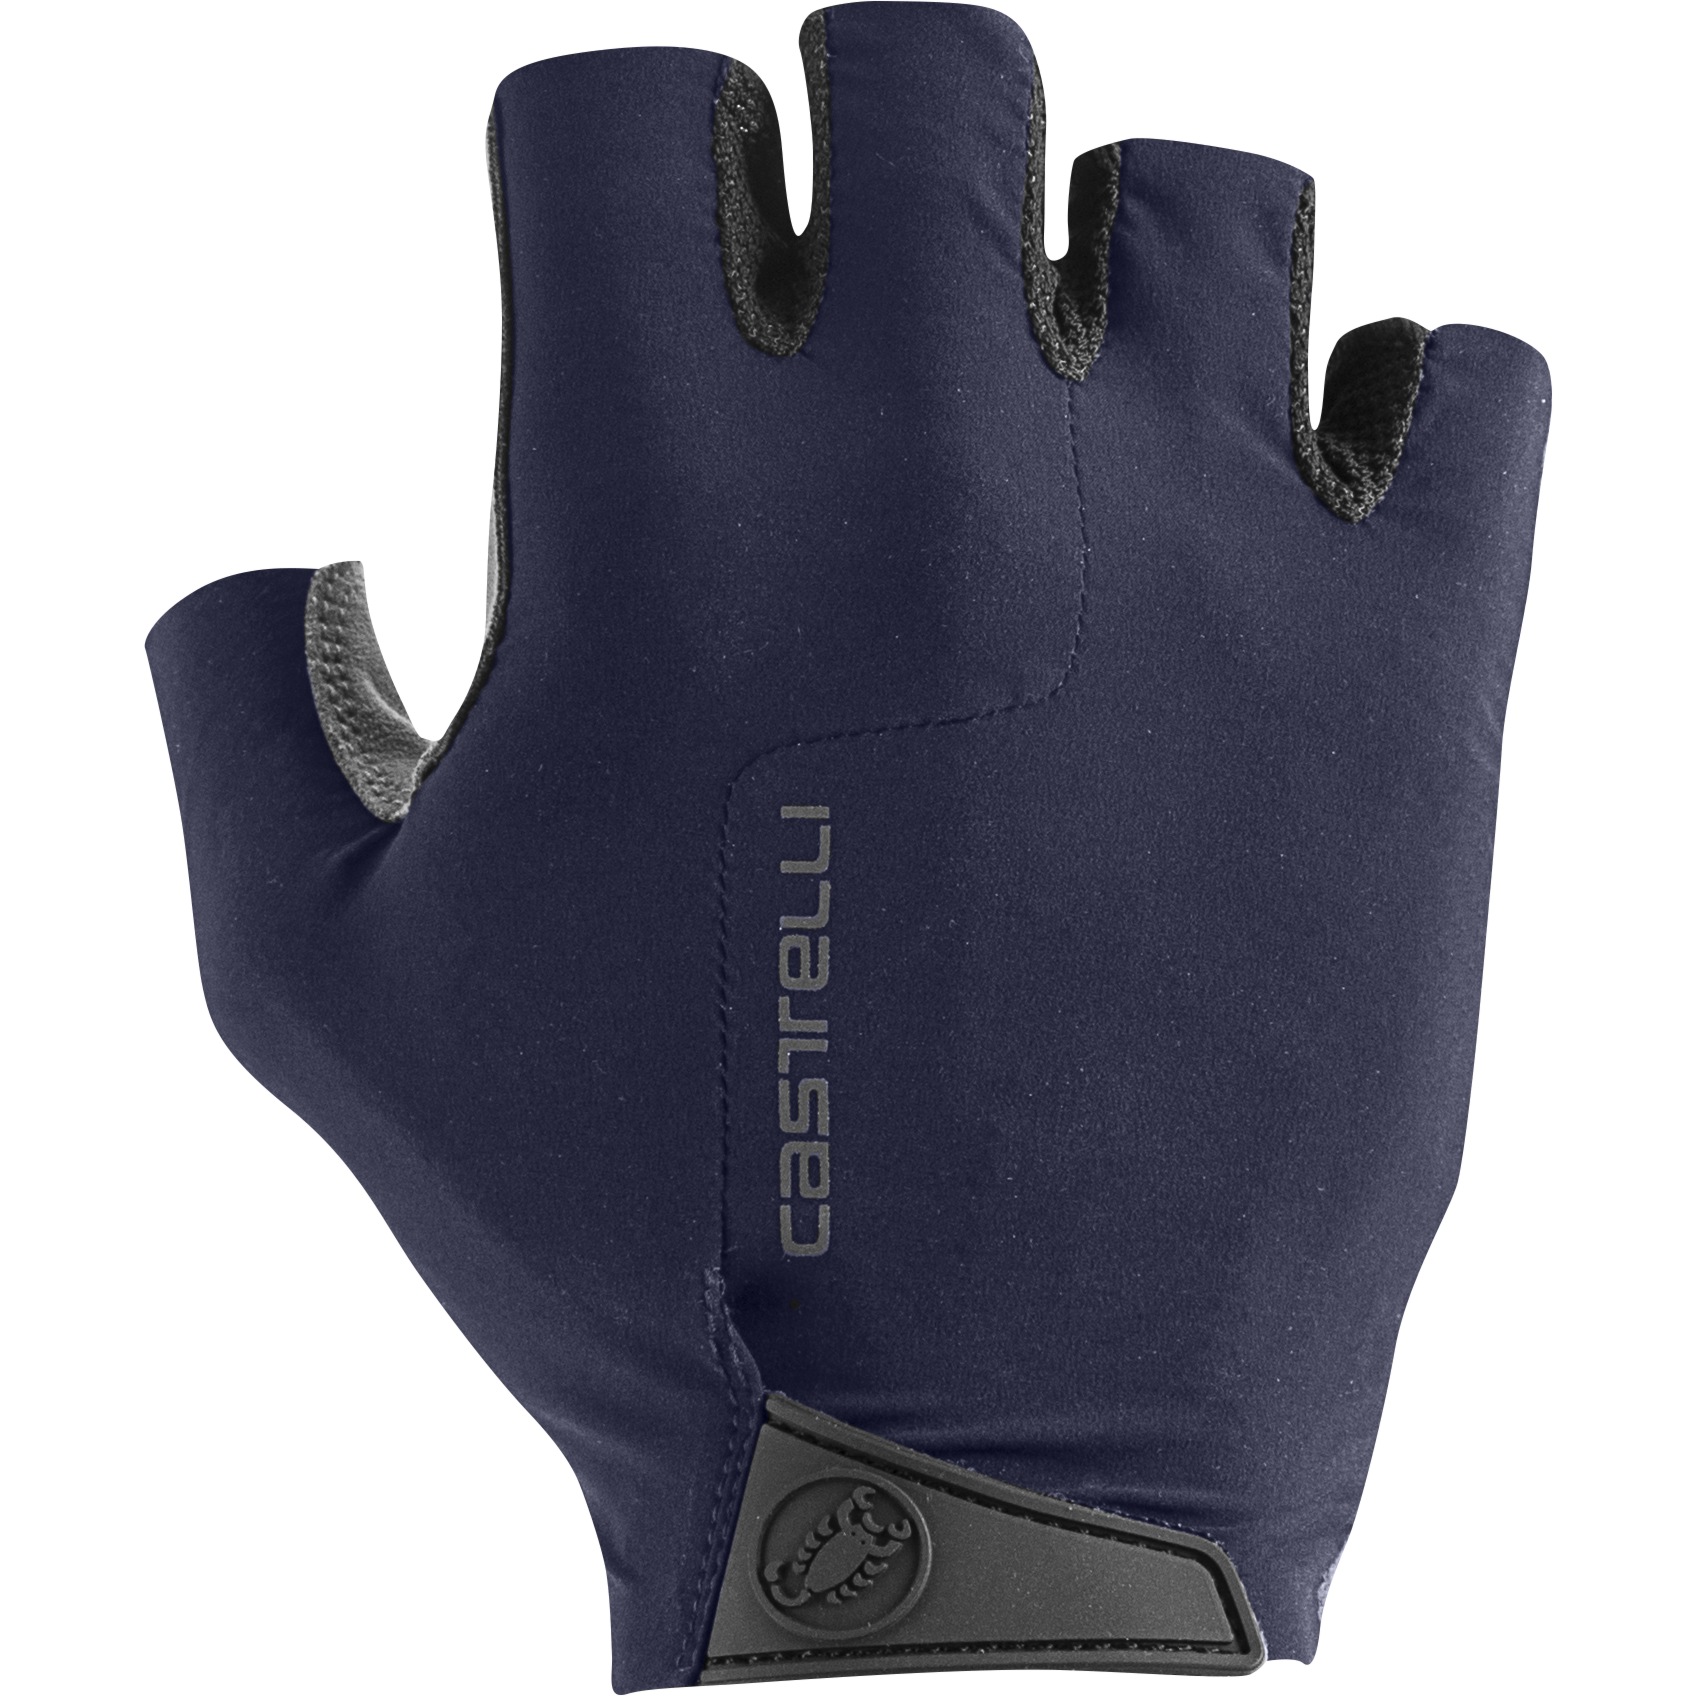 Productfoto van Castelli Premio Handschoenen met Korte Vingers - belgian blue 424